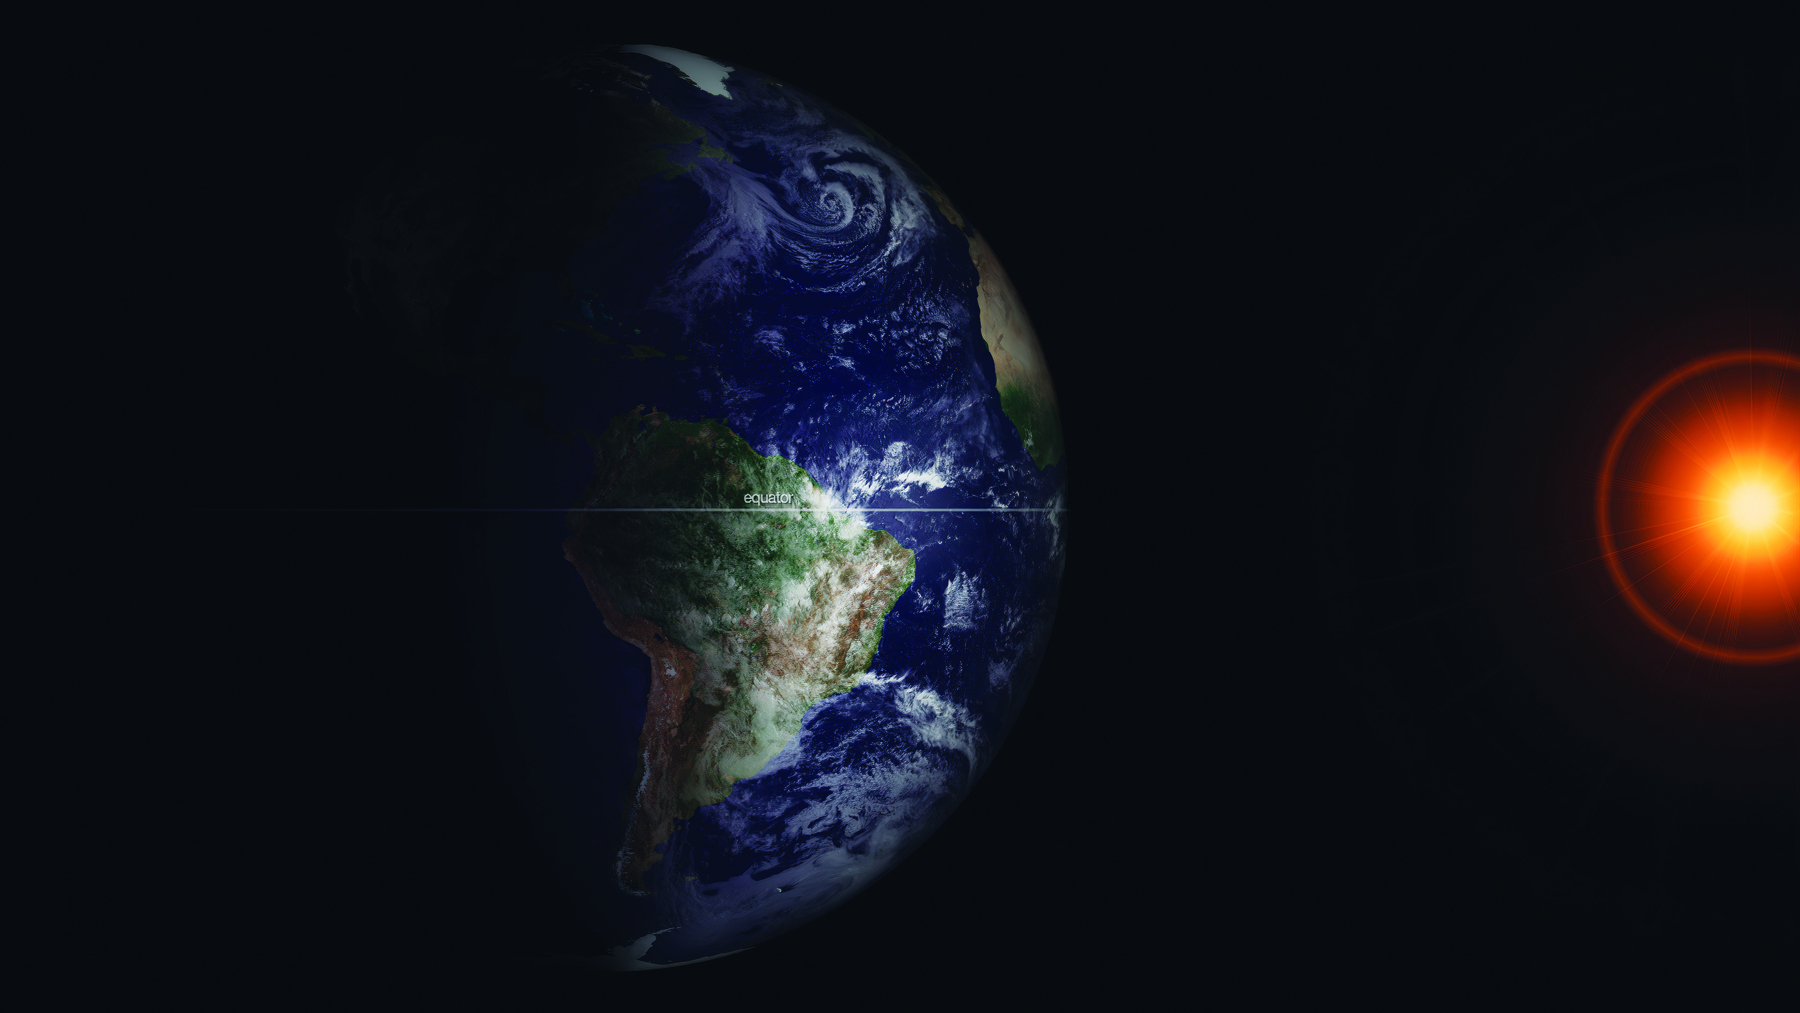 Imagem de satélite do planeta Terra em fundo preto, cuja face destaca a América do Sul e o oceano cobertos de nuvens. À direita, uma forte luz laranja ao redor de uma esfera.